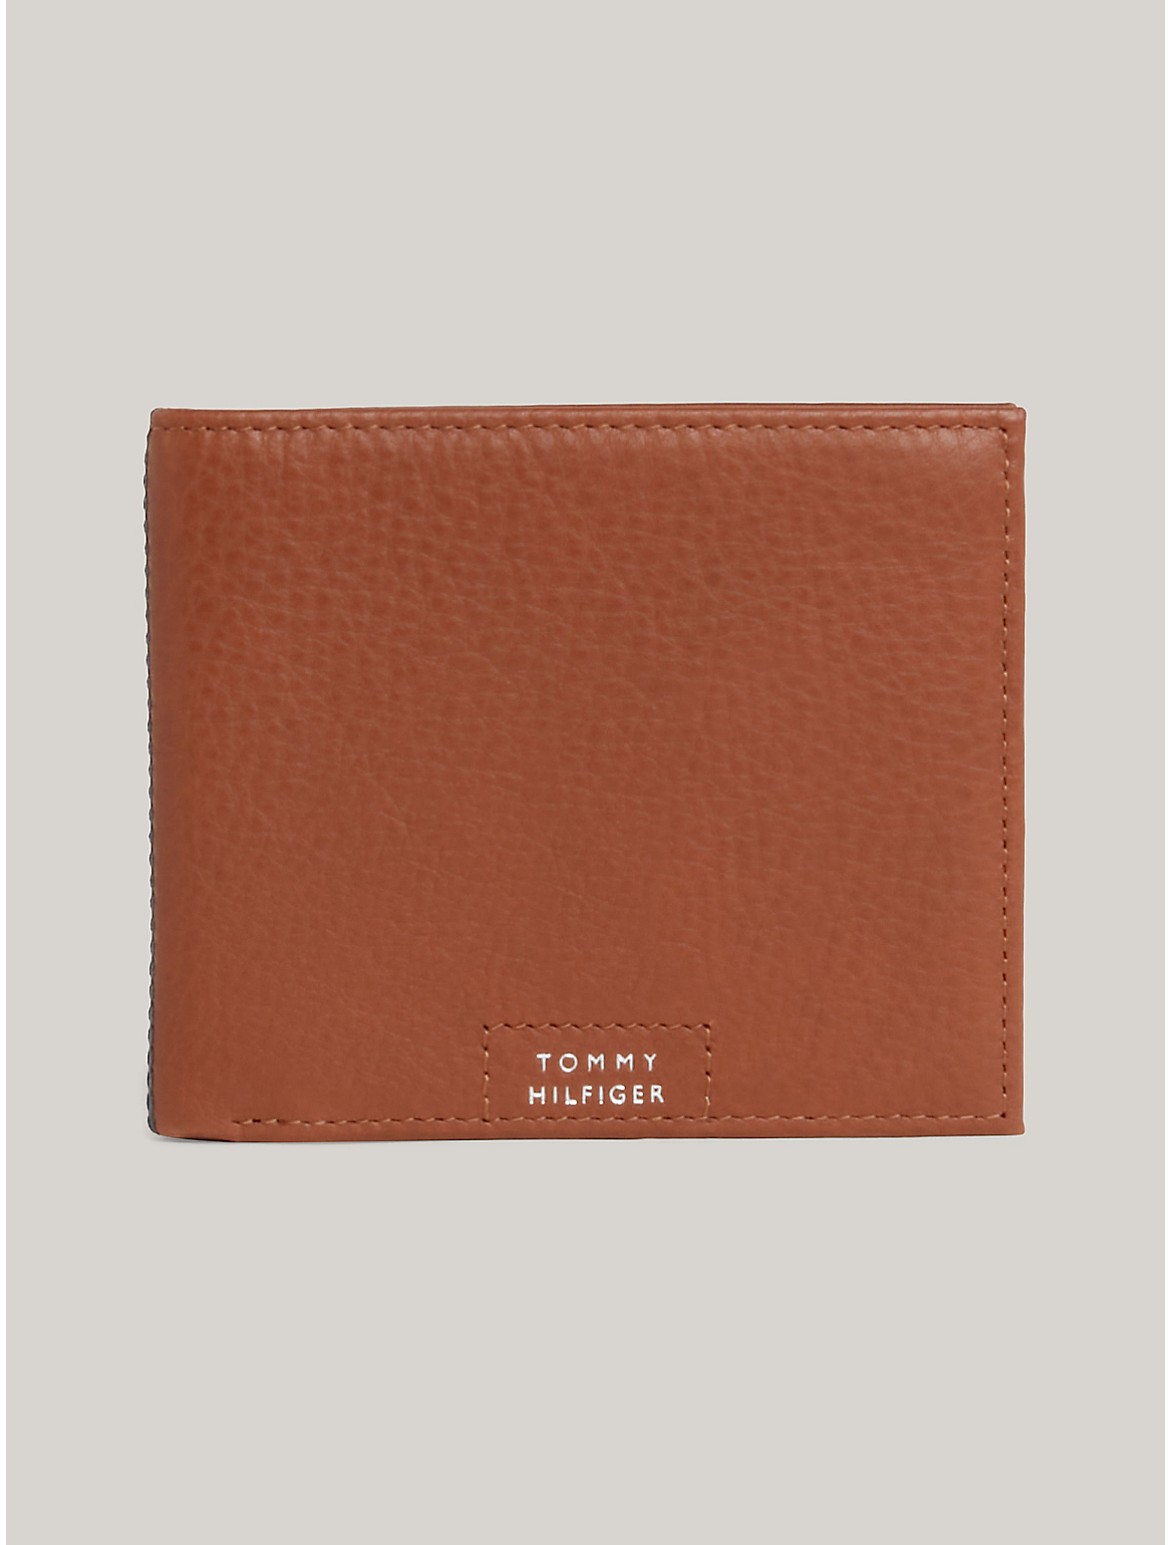 Tommy Hilfiger Men's Hilfiger Leather Bifold Wallet